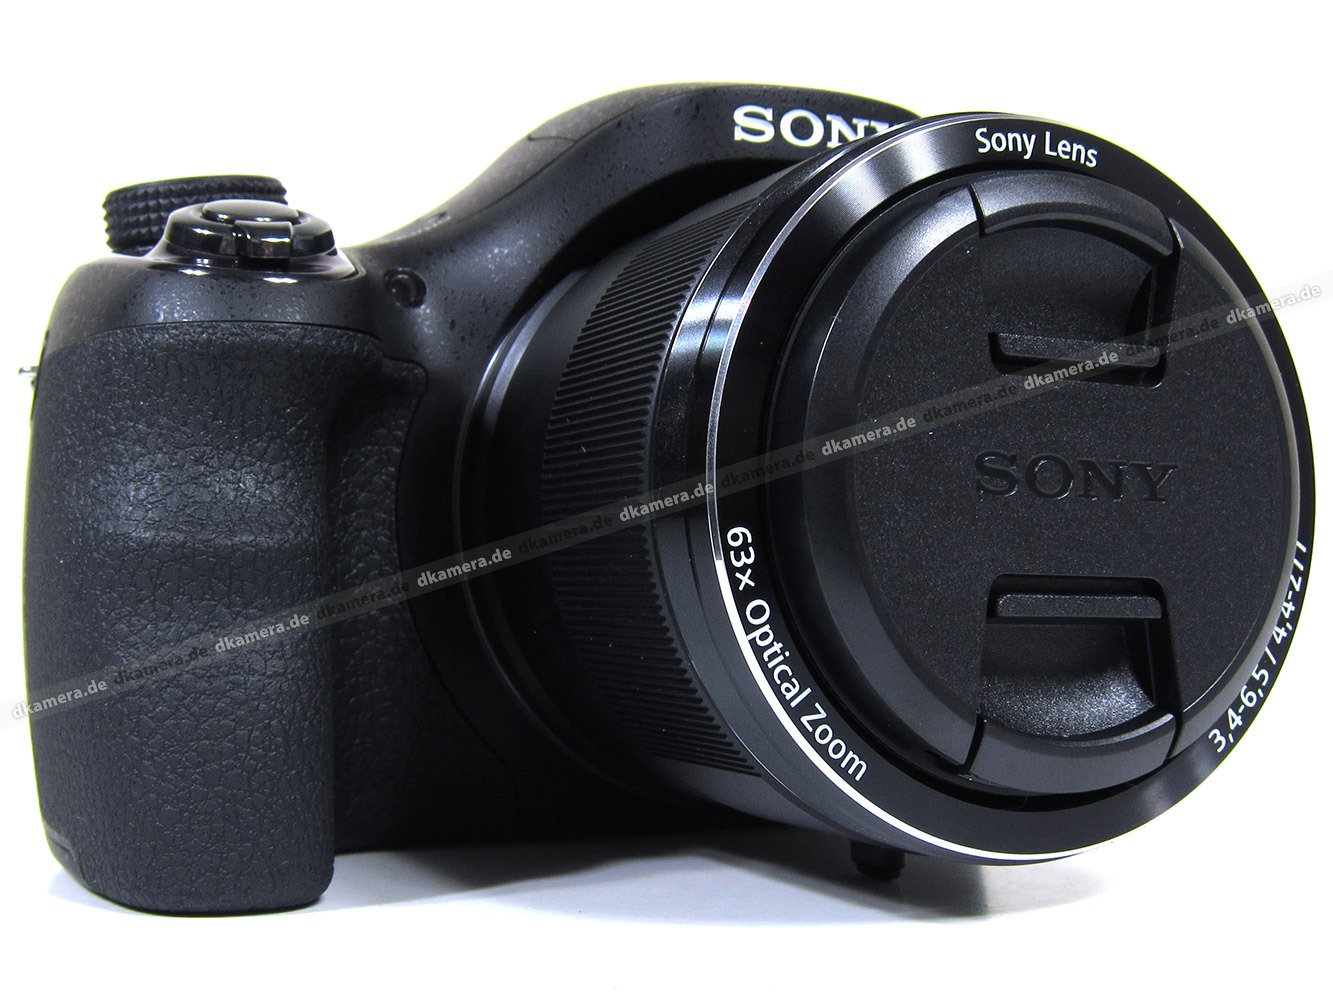 Nikon Coolpix B500 Vs Sony Cyber-shot DSC-WX1